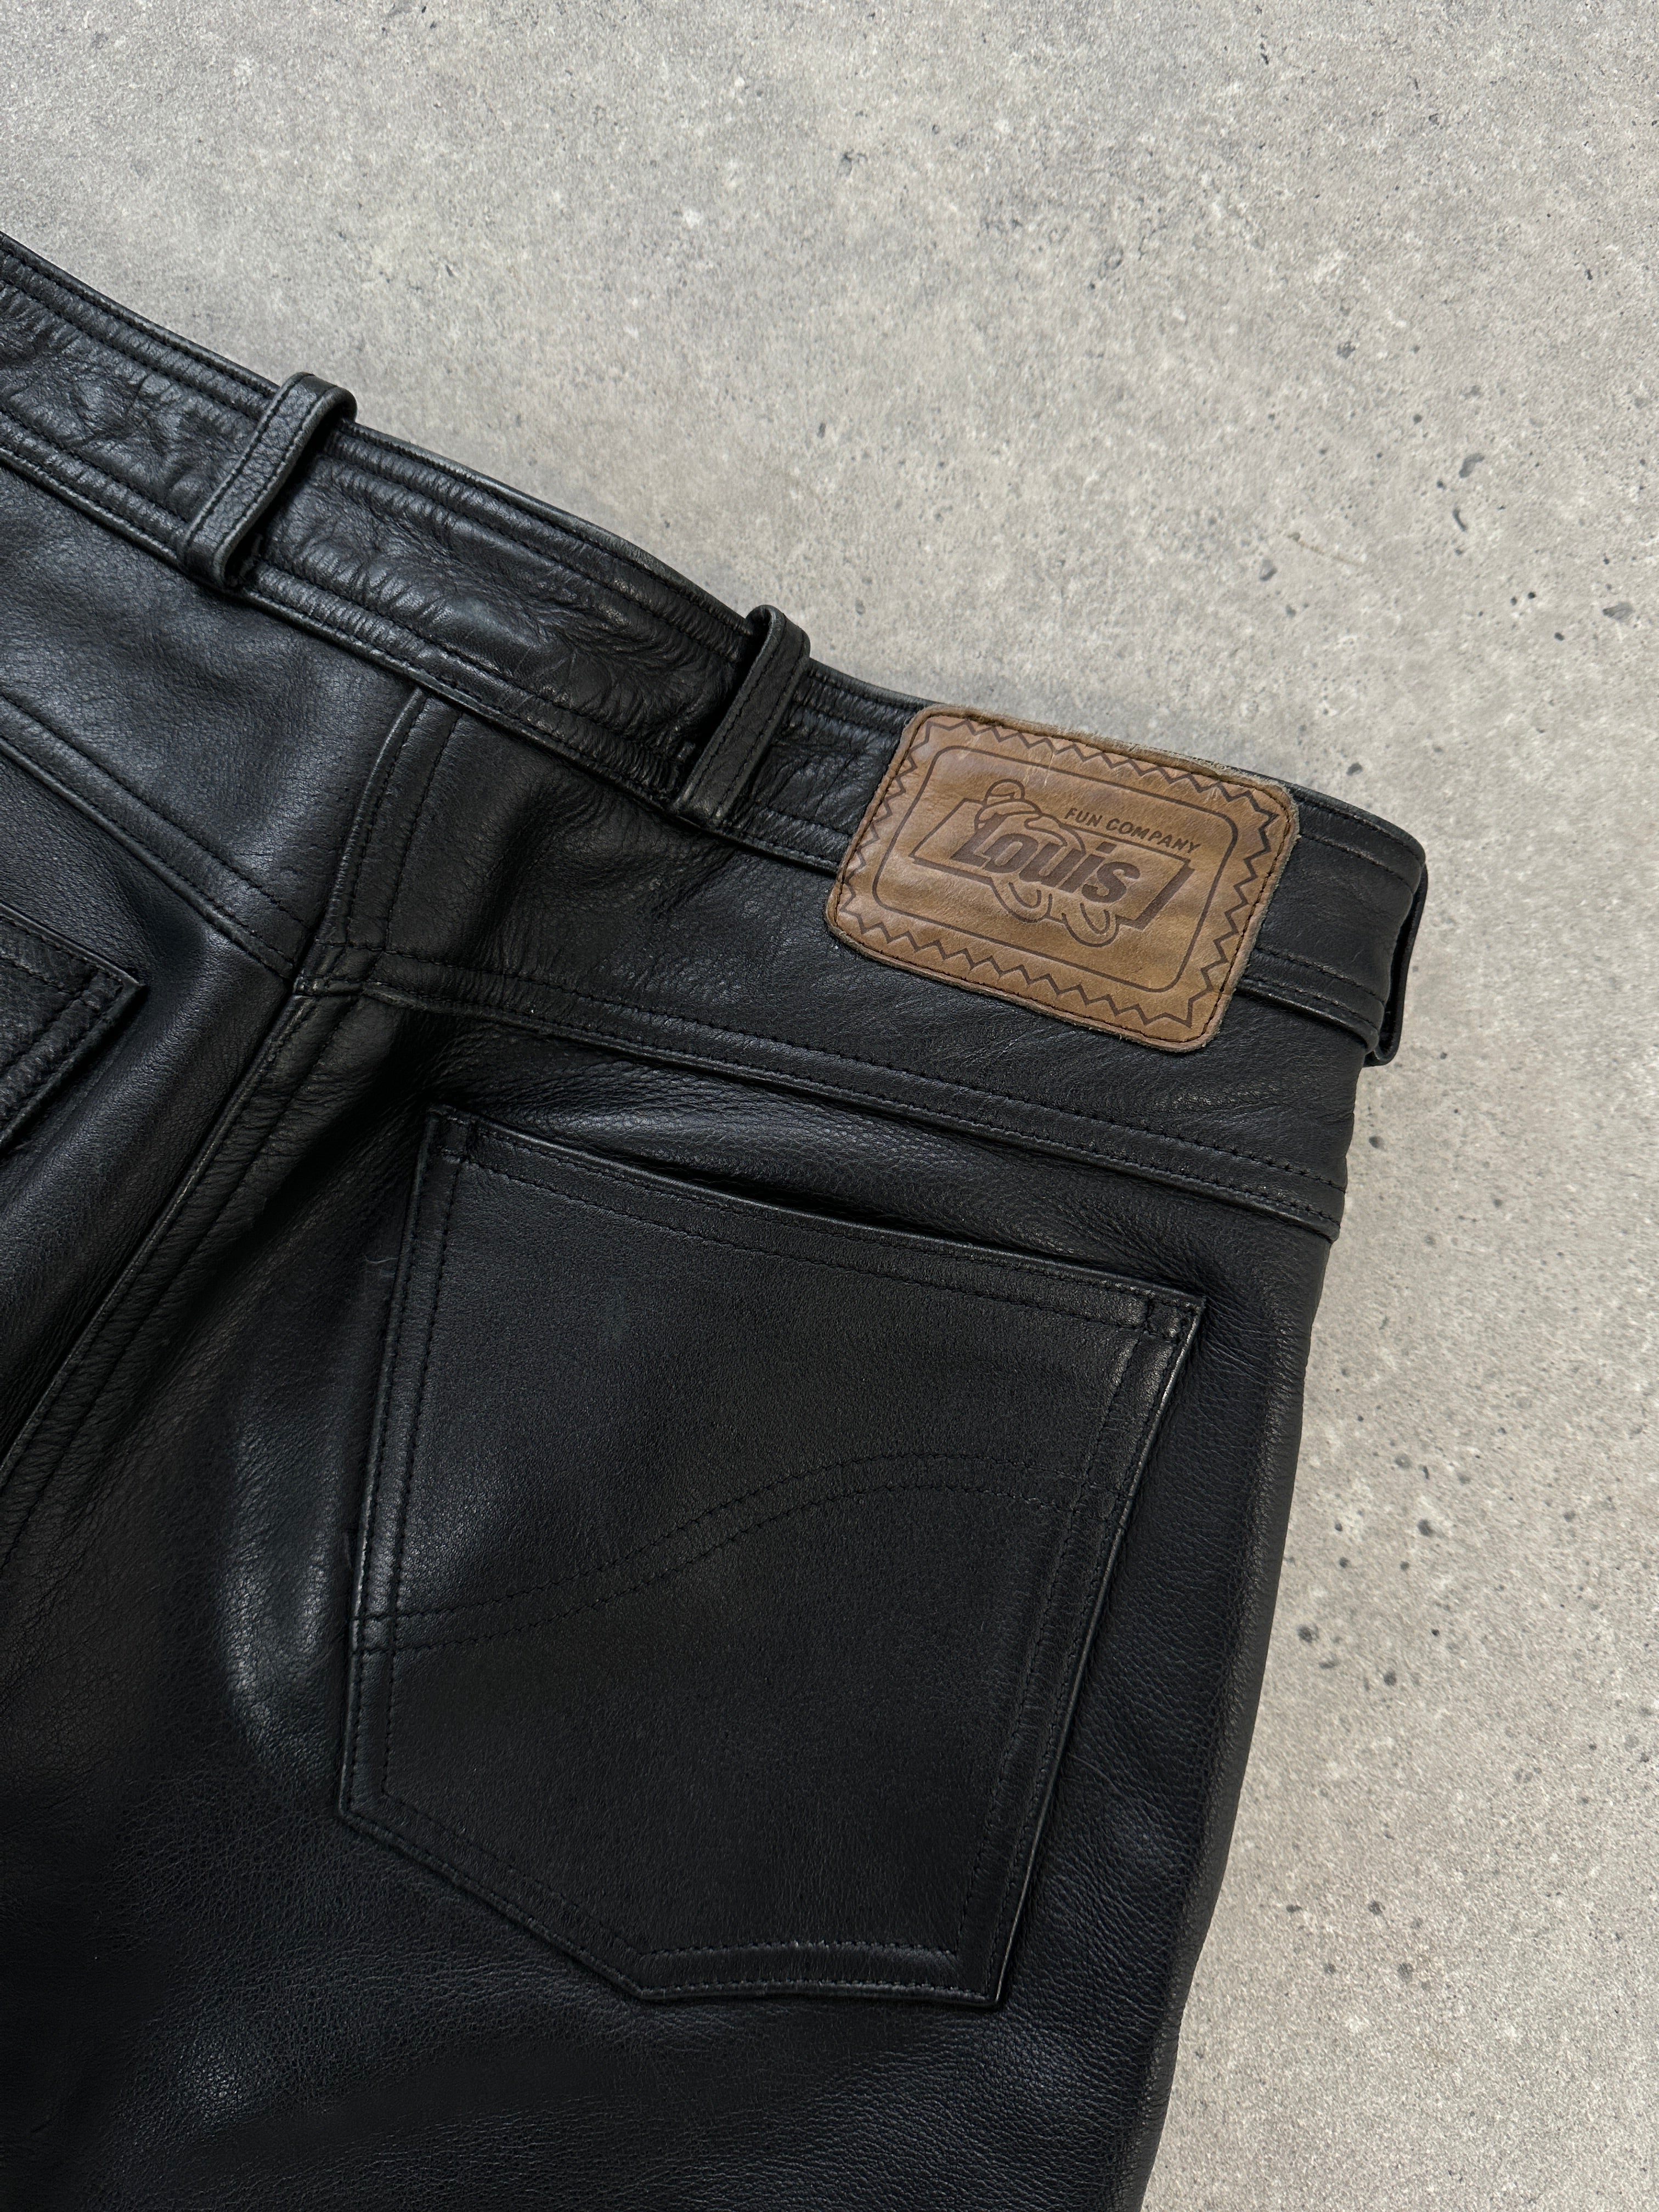 AGV Sport Element Vintage Leather Jacket Review - webBikeWorld